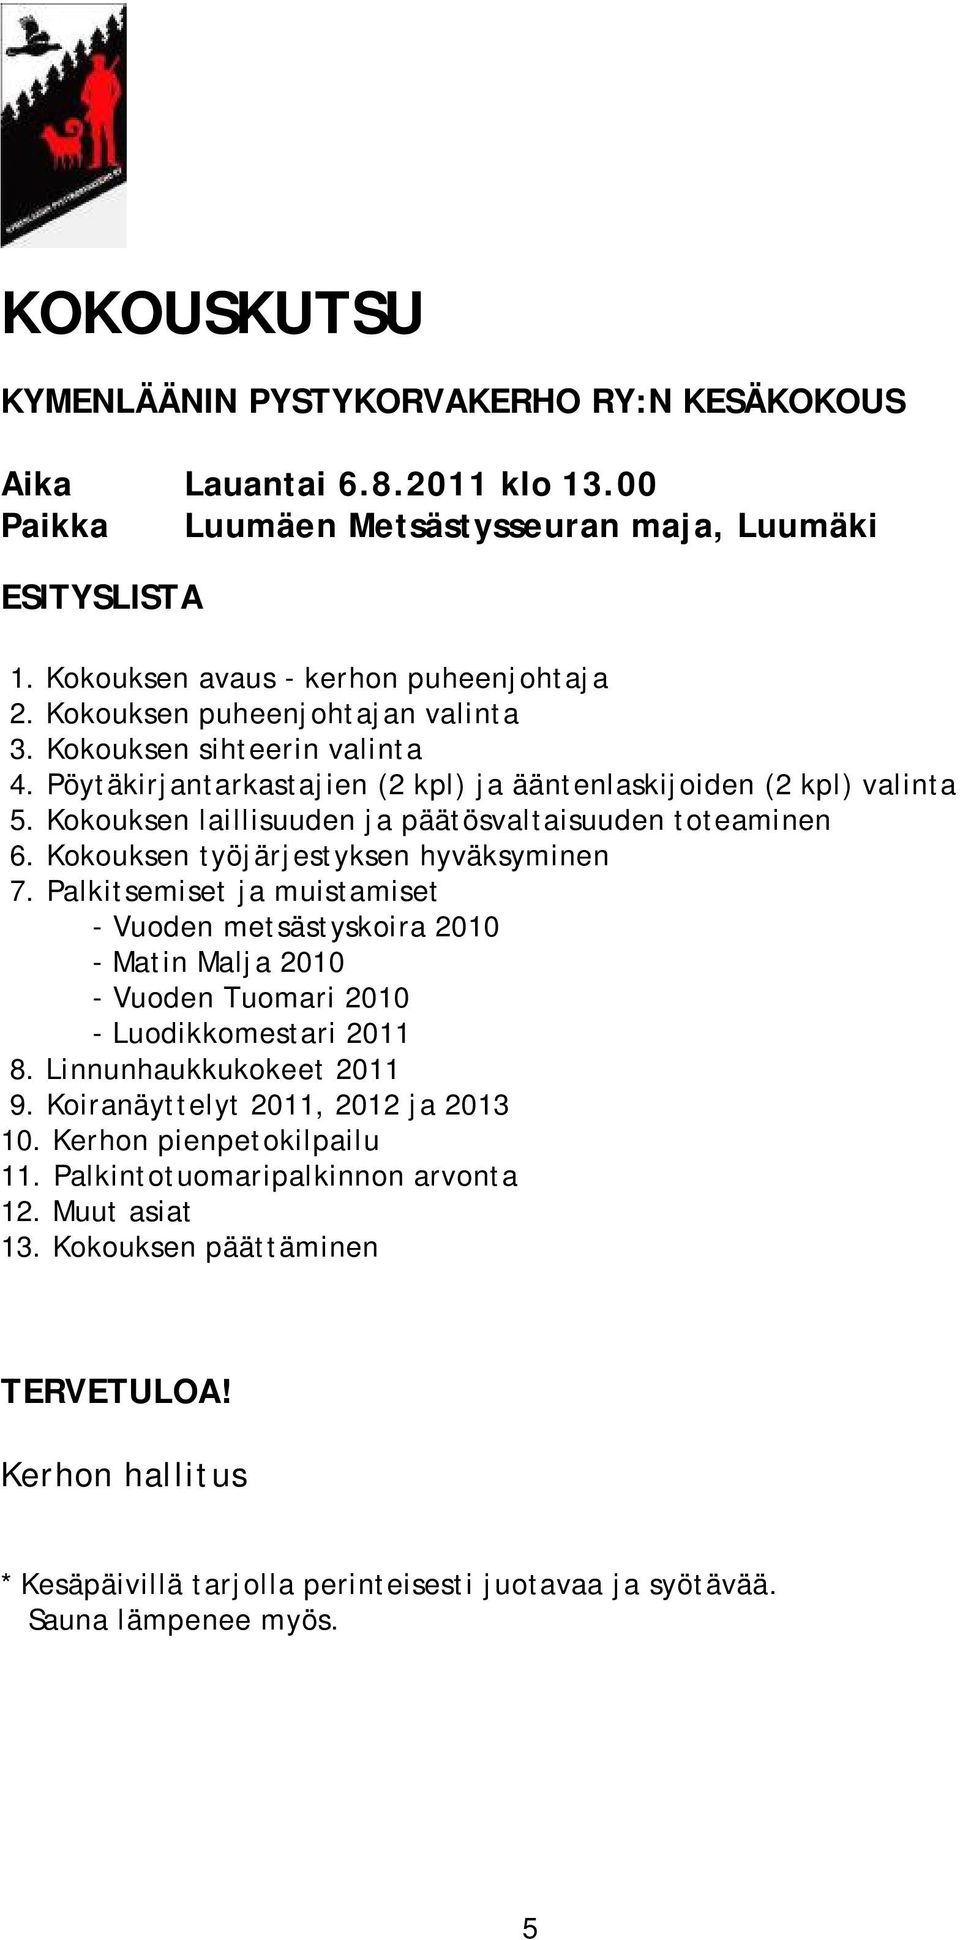 Kokouksen työjärjestyksen hyväksyminen 7. Palkitsemiset ja muistamiset - Vuoden metsästyskoira 2010 - Matin Malja 2010 - Vuoden Tuomari 2010 - Luodikkomestari 2011 8. Linnunhaukkukokeet 2011 9.